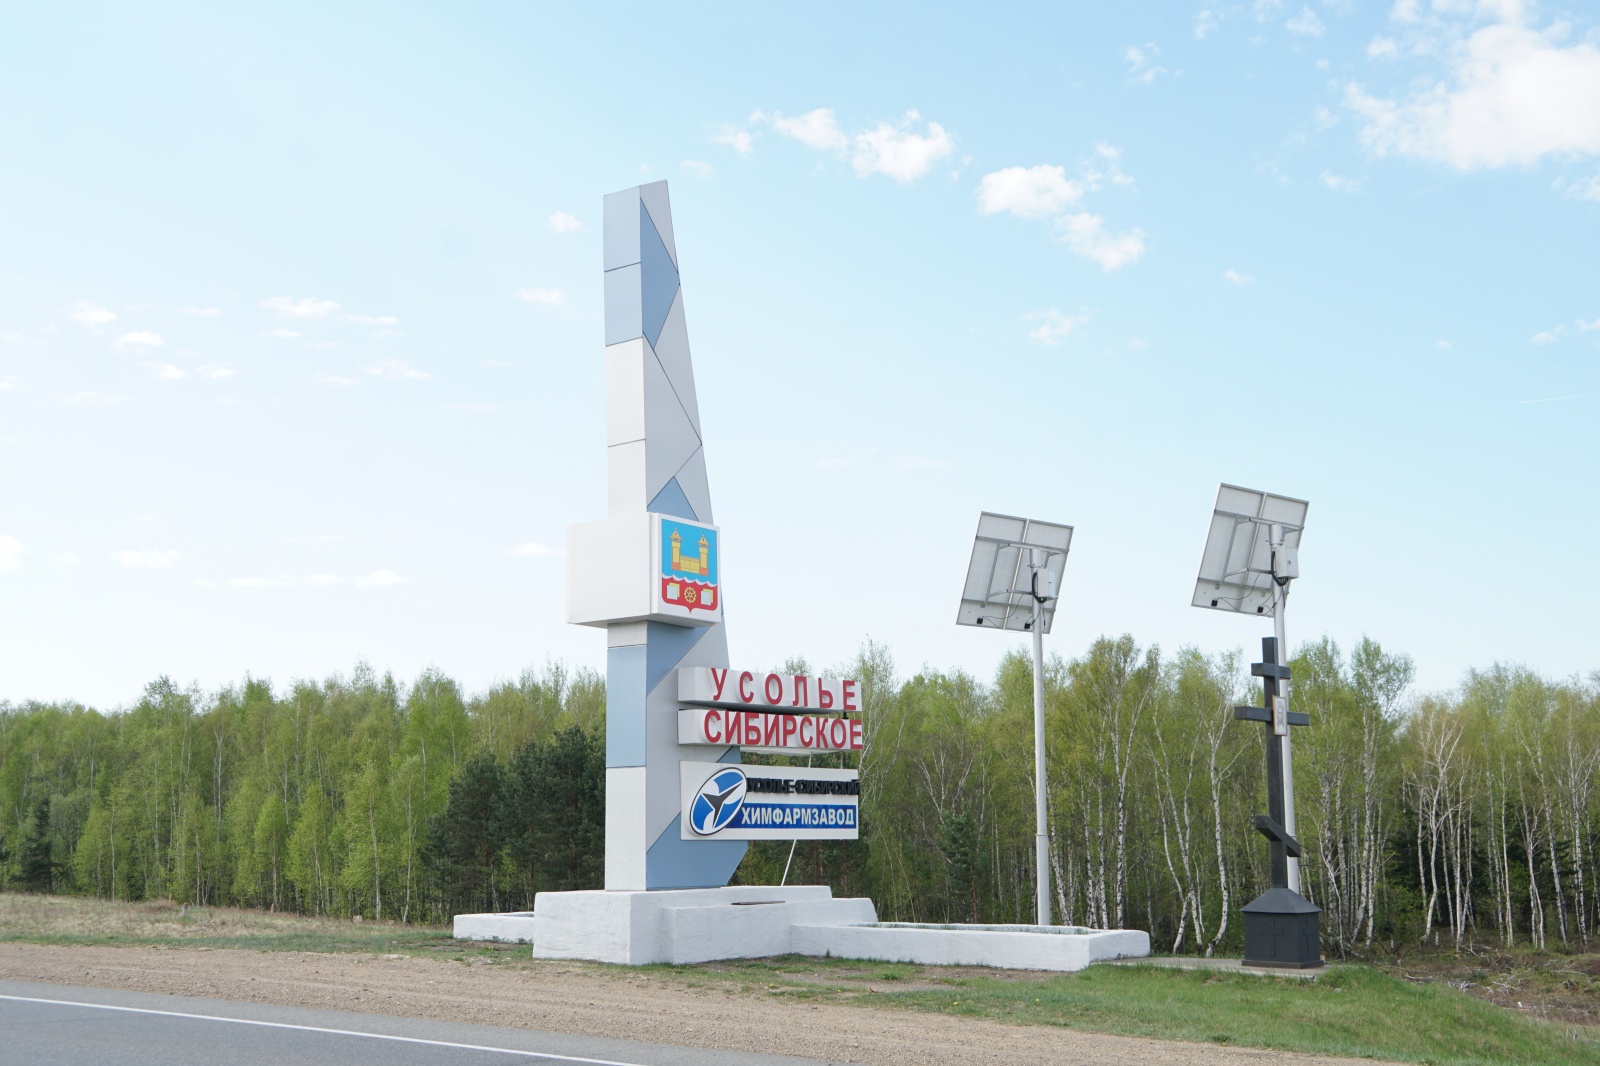 Резервный водовод построят в обход «Усольехимпрома»